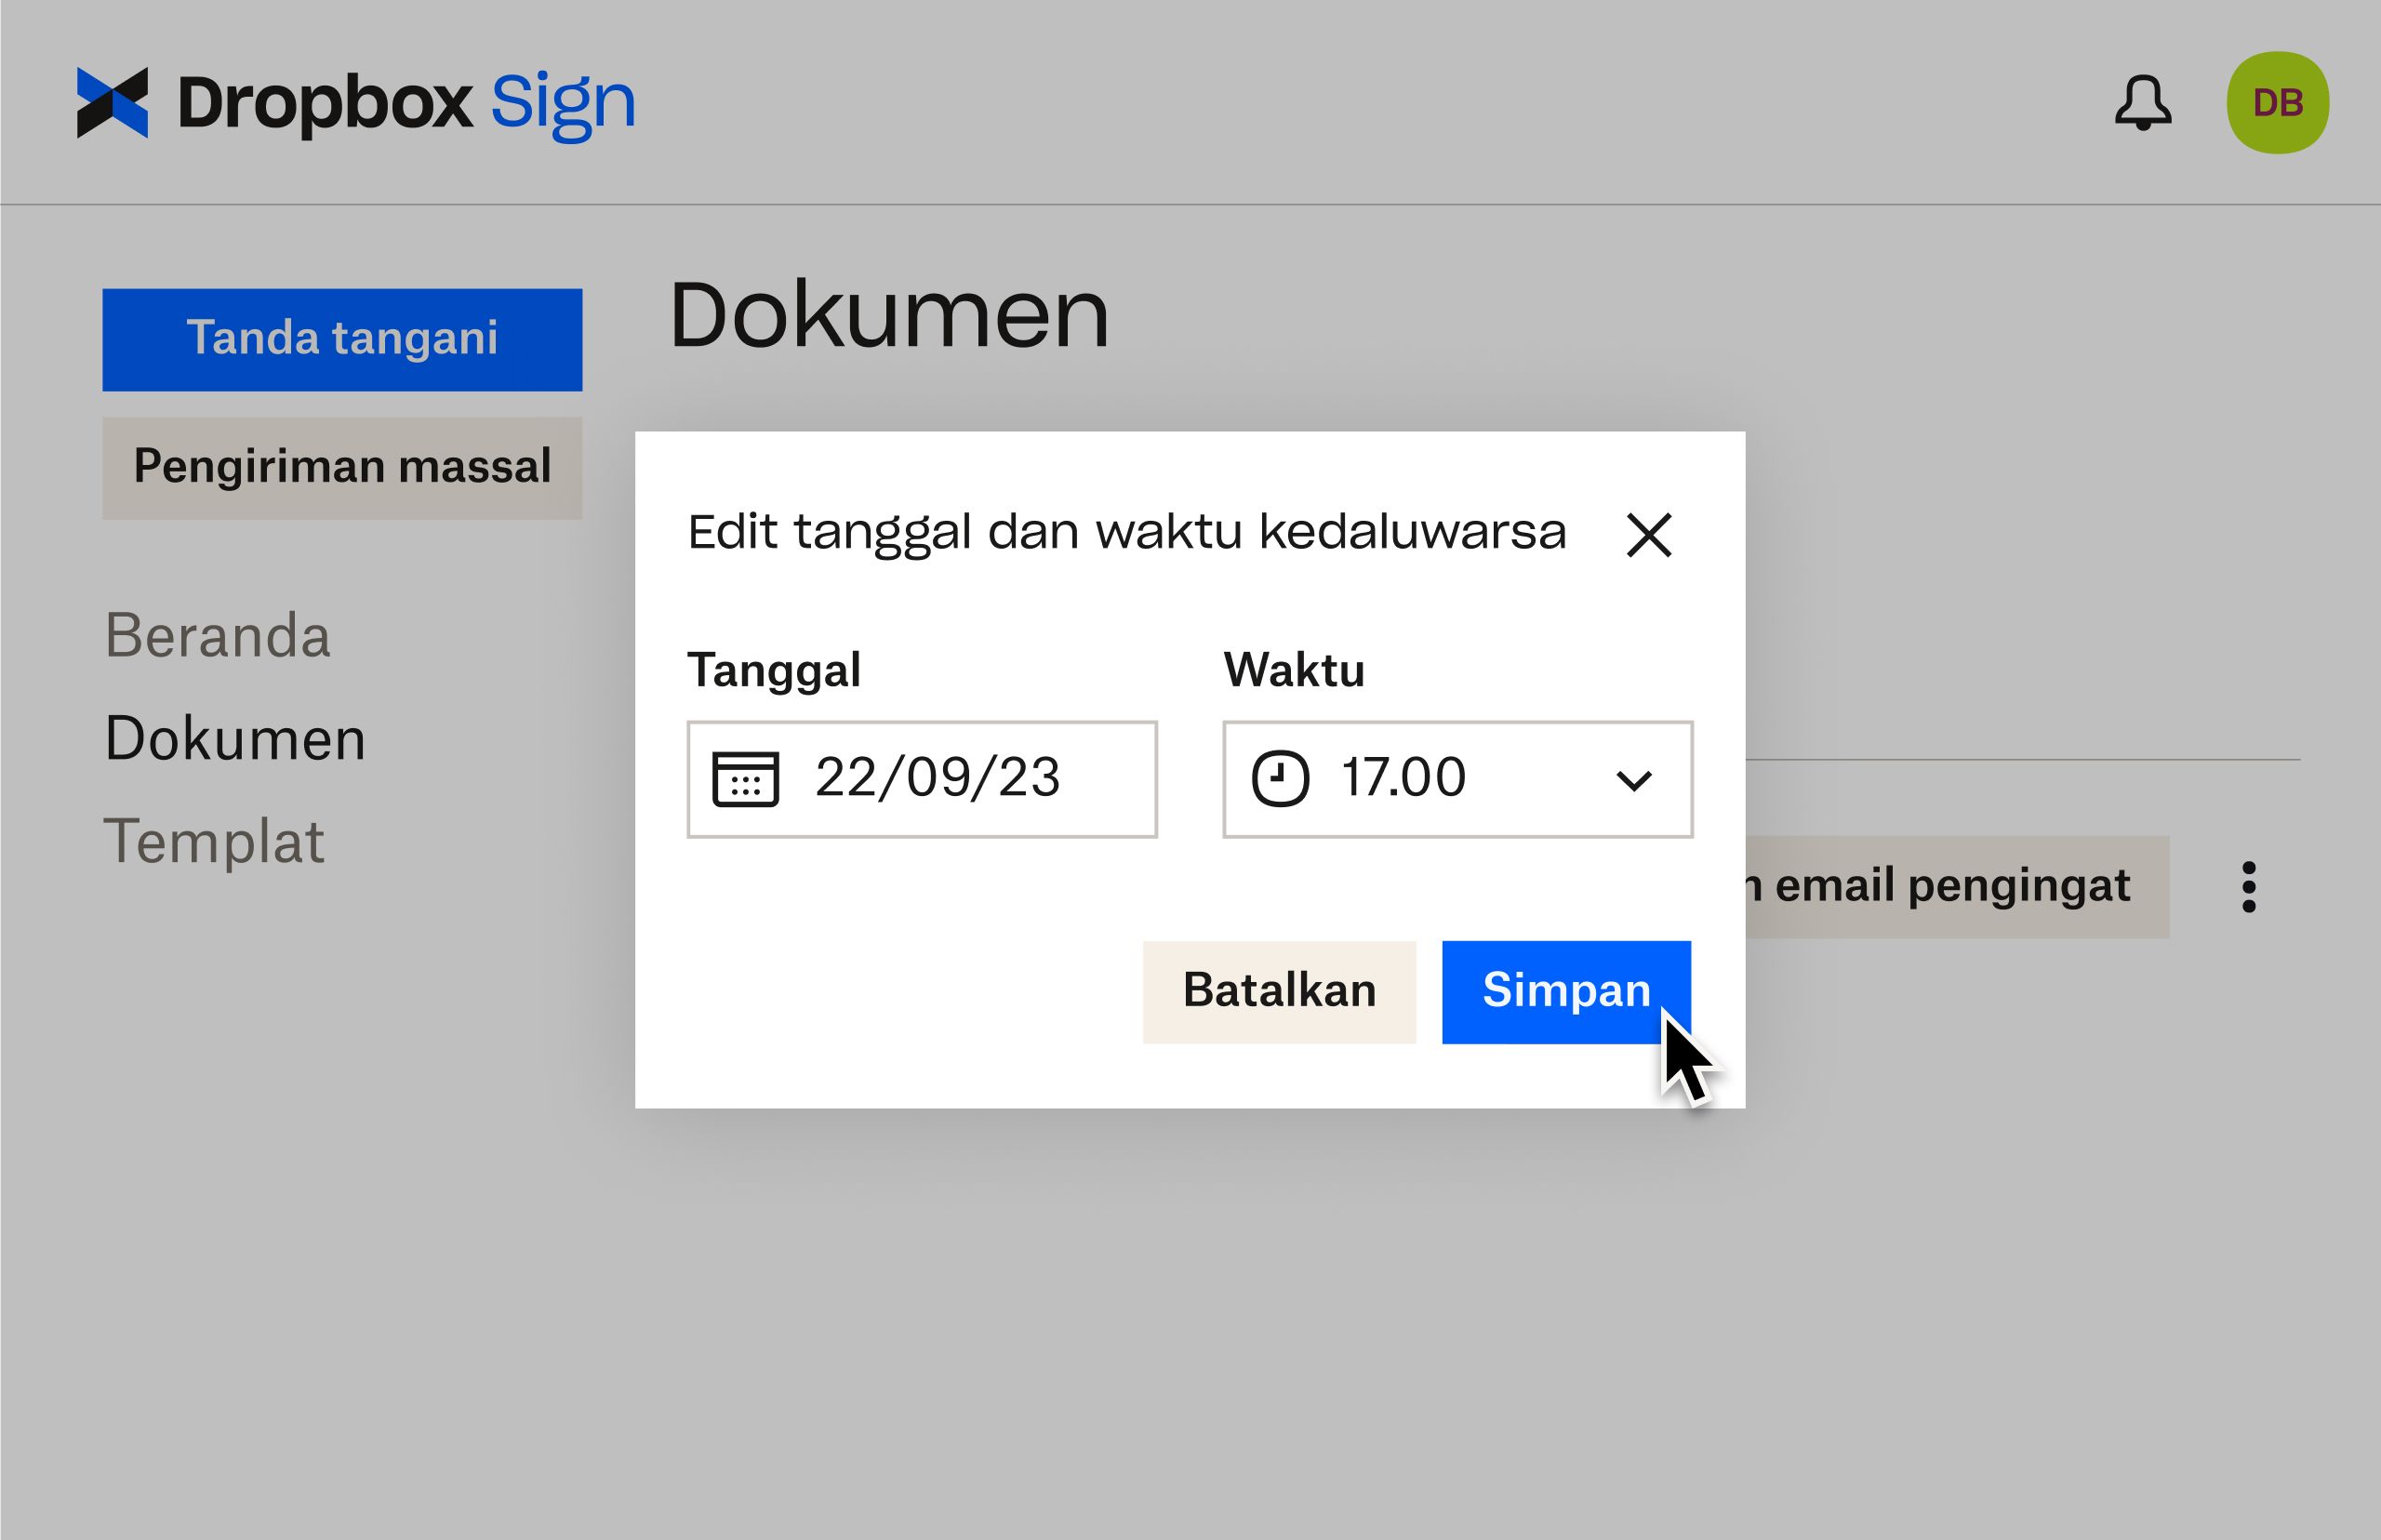 Dropbox Sign UI menunjukkan cara mengedit tanggal kedaluwarsa setelah mengirim dokumen untuk penandatanganan